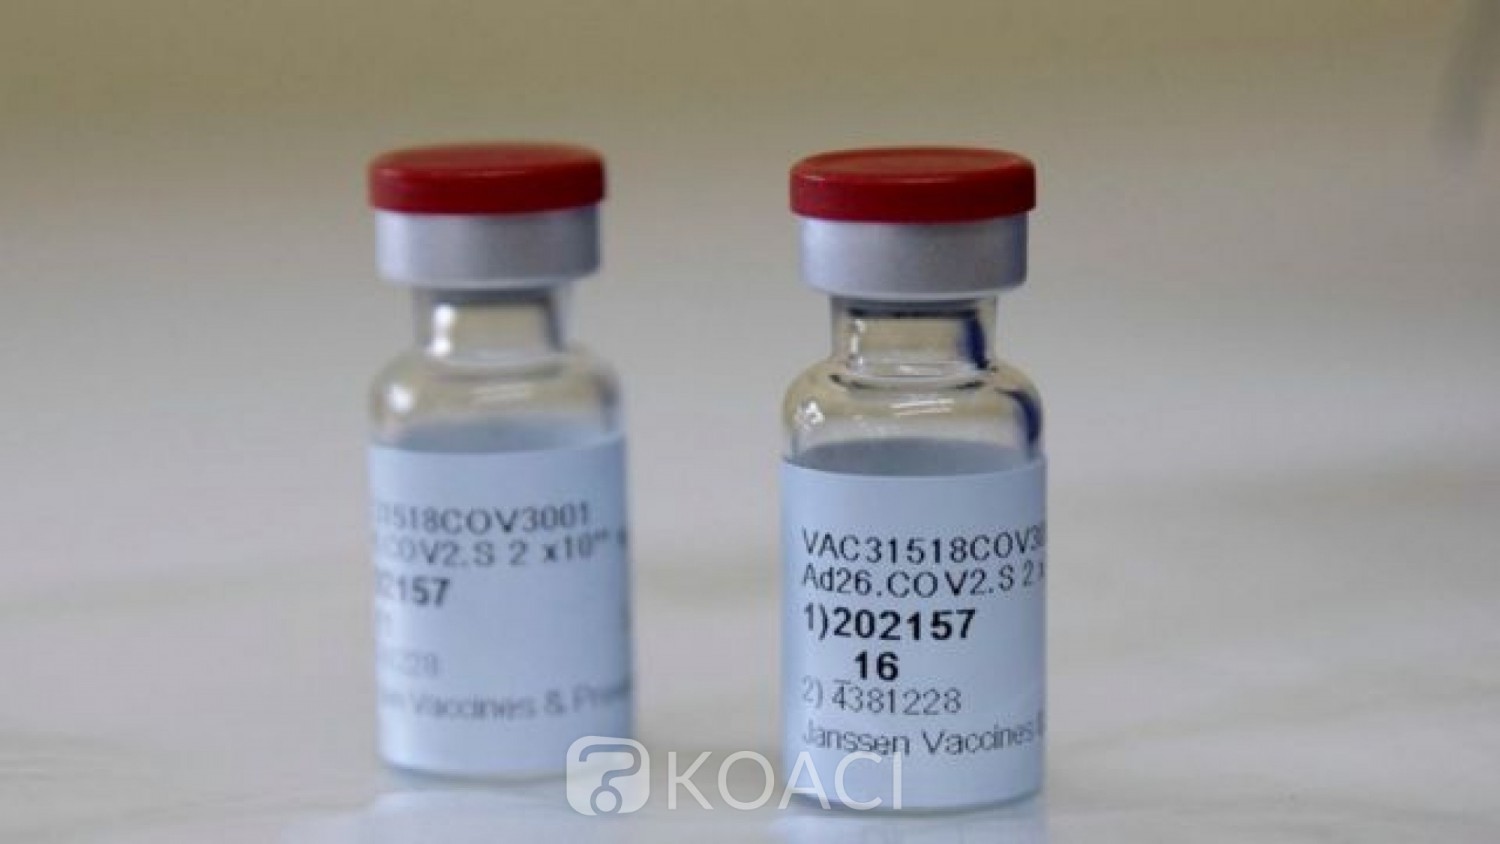 Afrique du Sud : Covid-19, après des risques de «caillots de sang», le vaccin Johnson & Johnson mis en pause